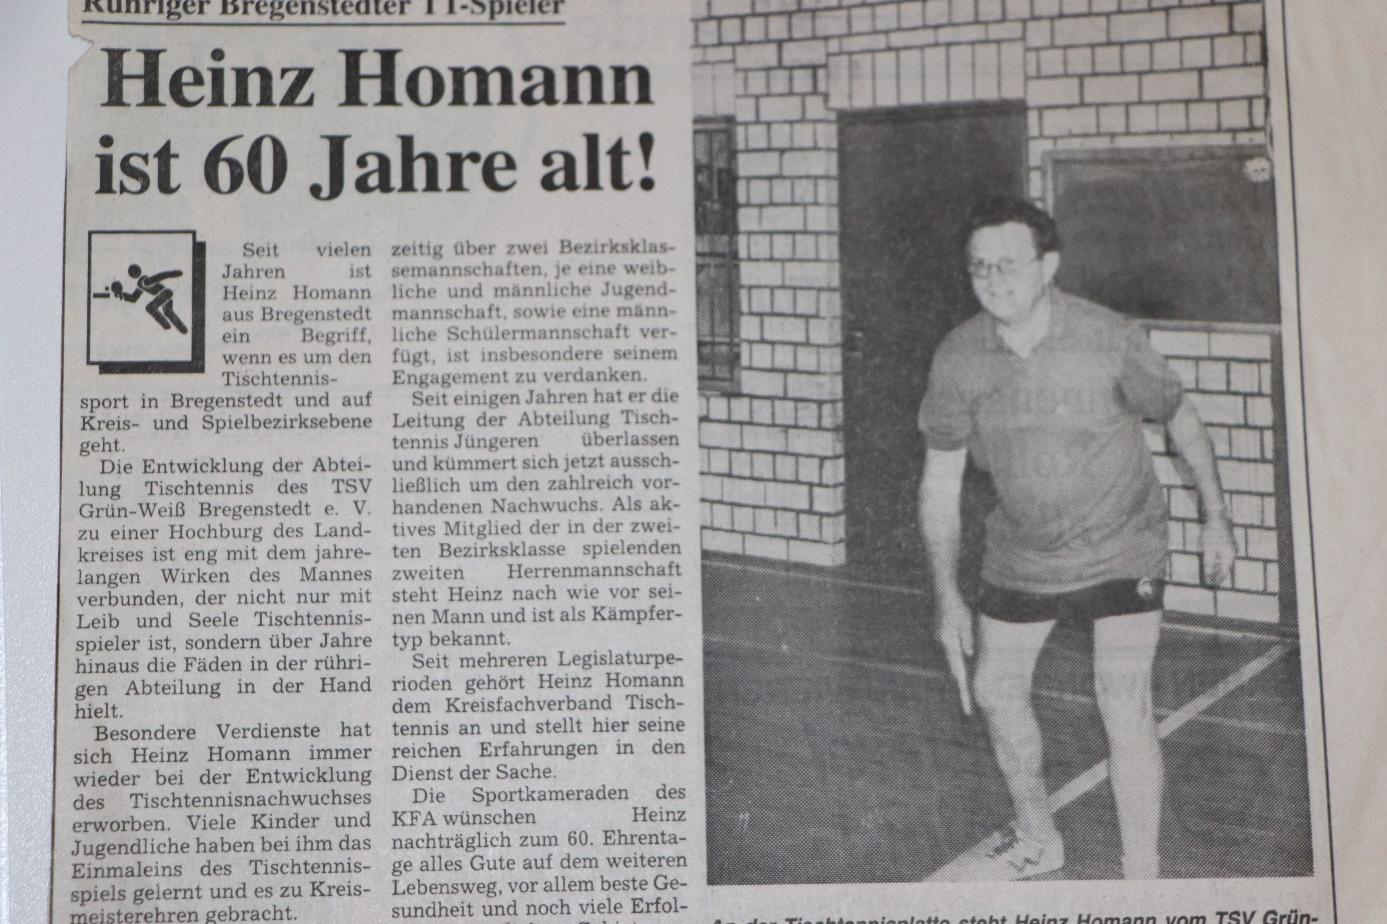 Artikel über Heins Hohmann